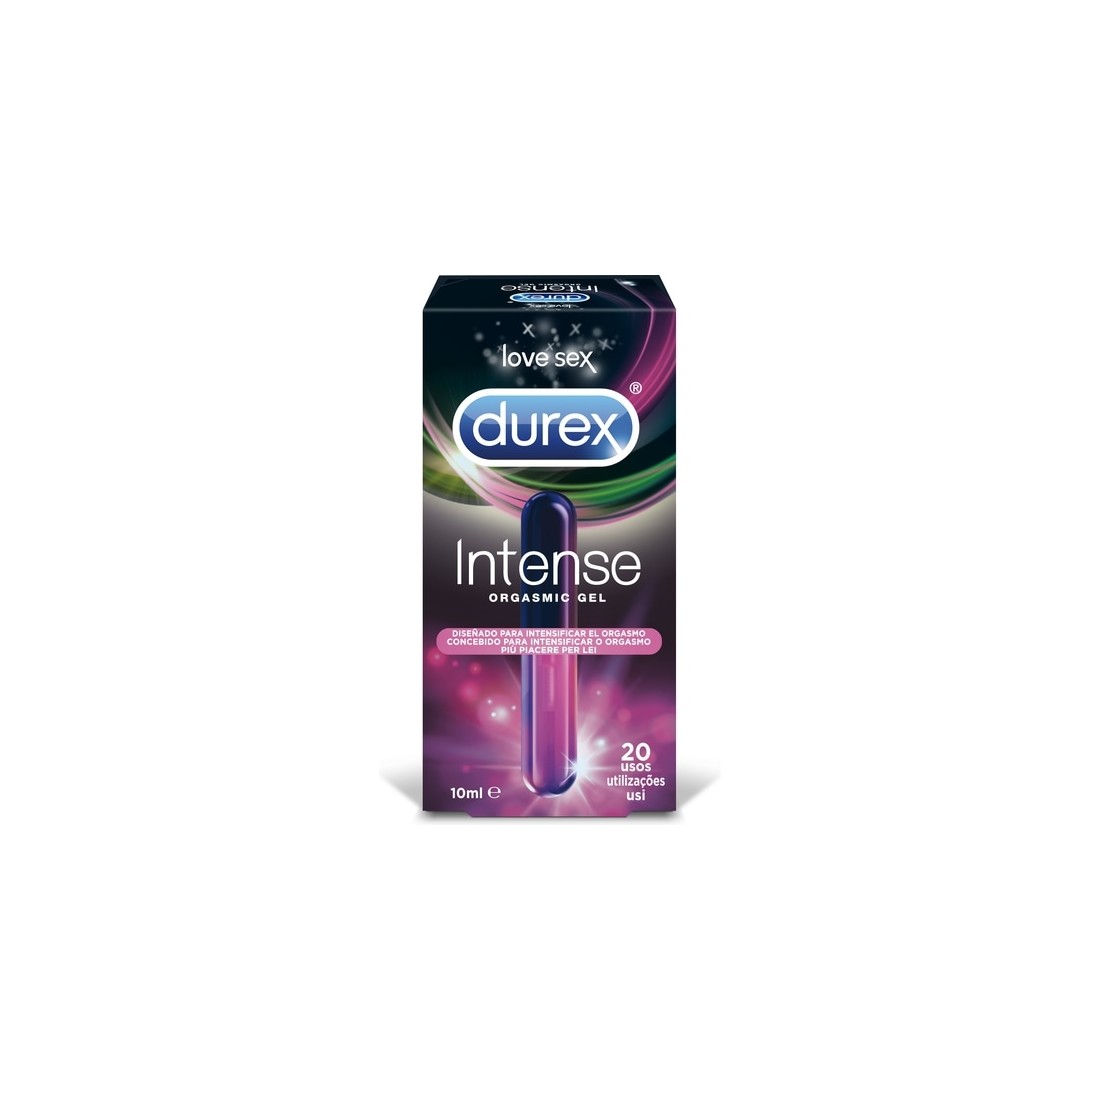 Durex Intense Orgasmic Gel 10 Ml #OrgasmsForAll - PR2010342079